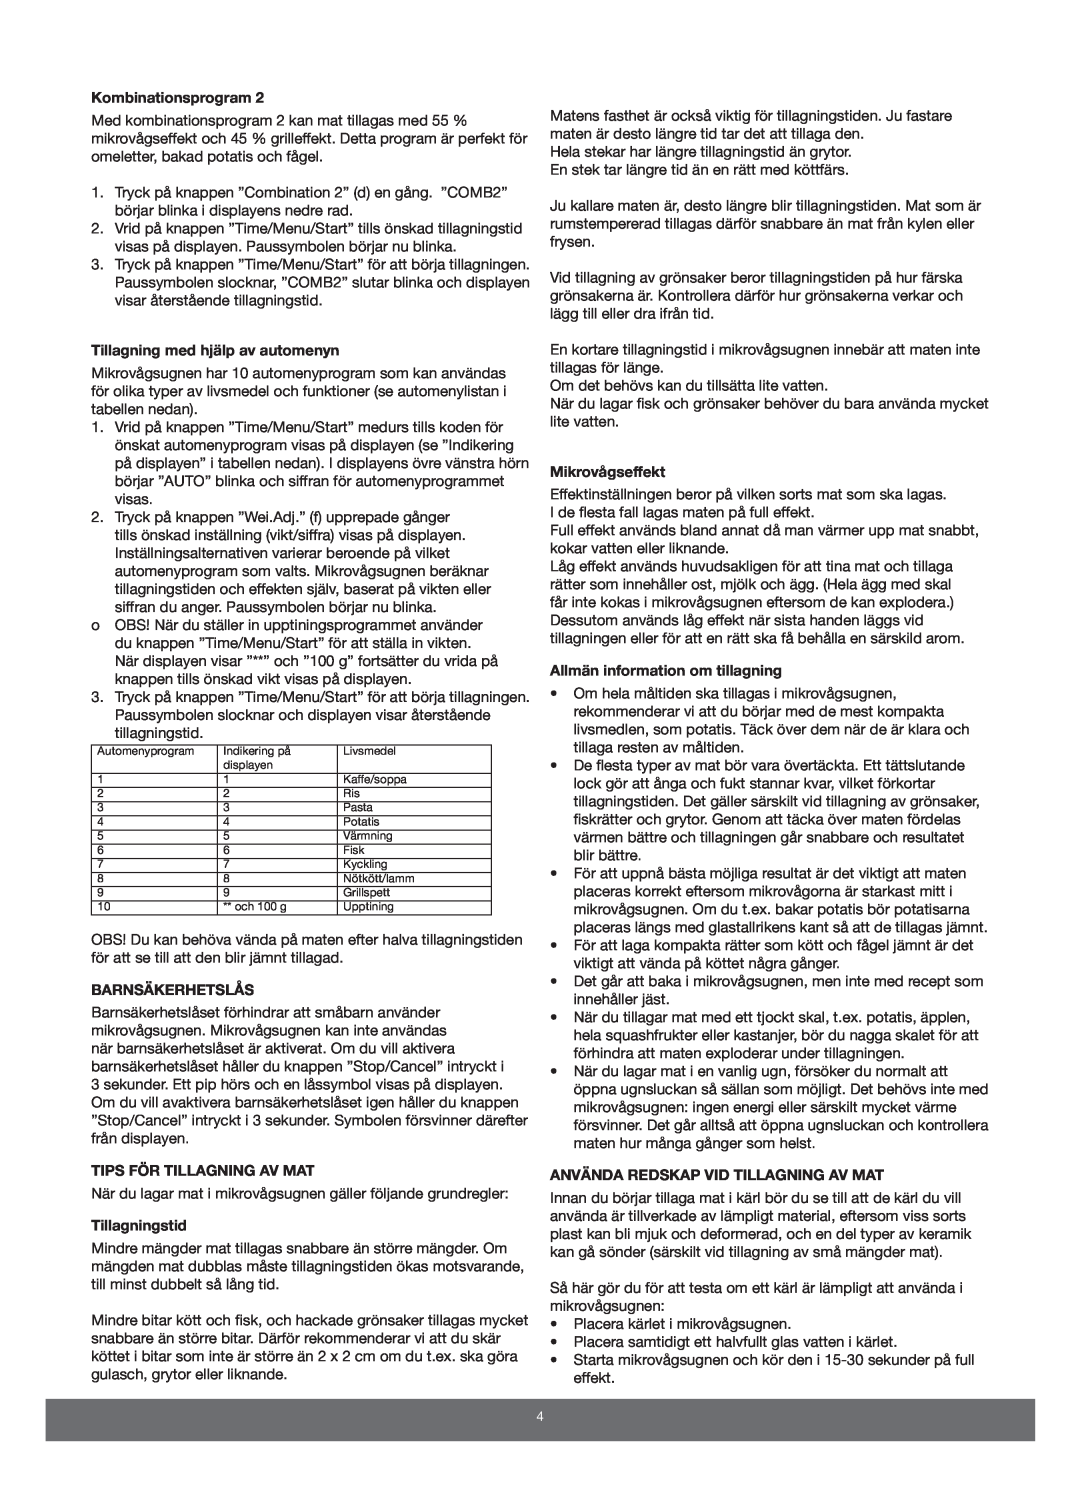 Melissa 653-089 manual Kombinationsprogram, Tillagning med hjälp av automenyn, Barnsäkerhetslås, Tips För Tillagning Av Mat 